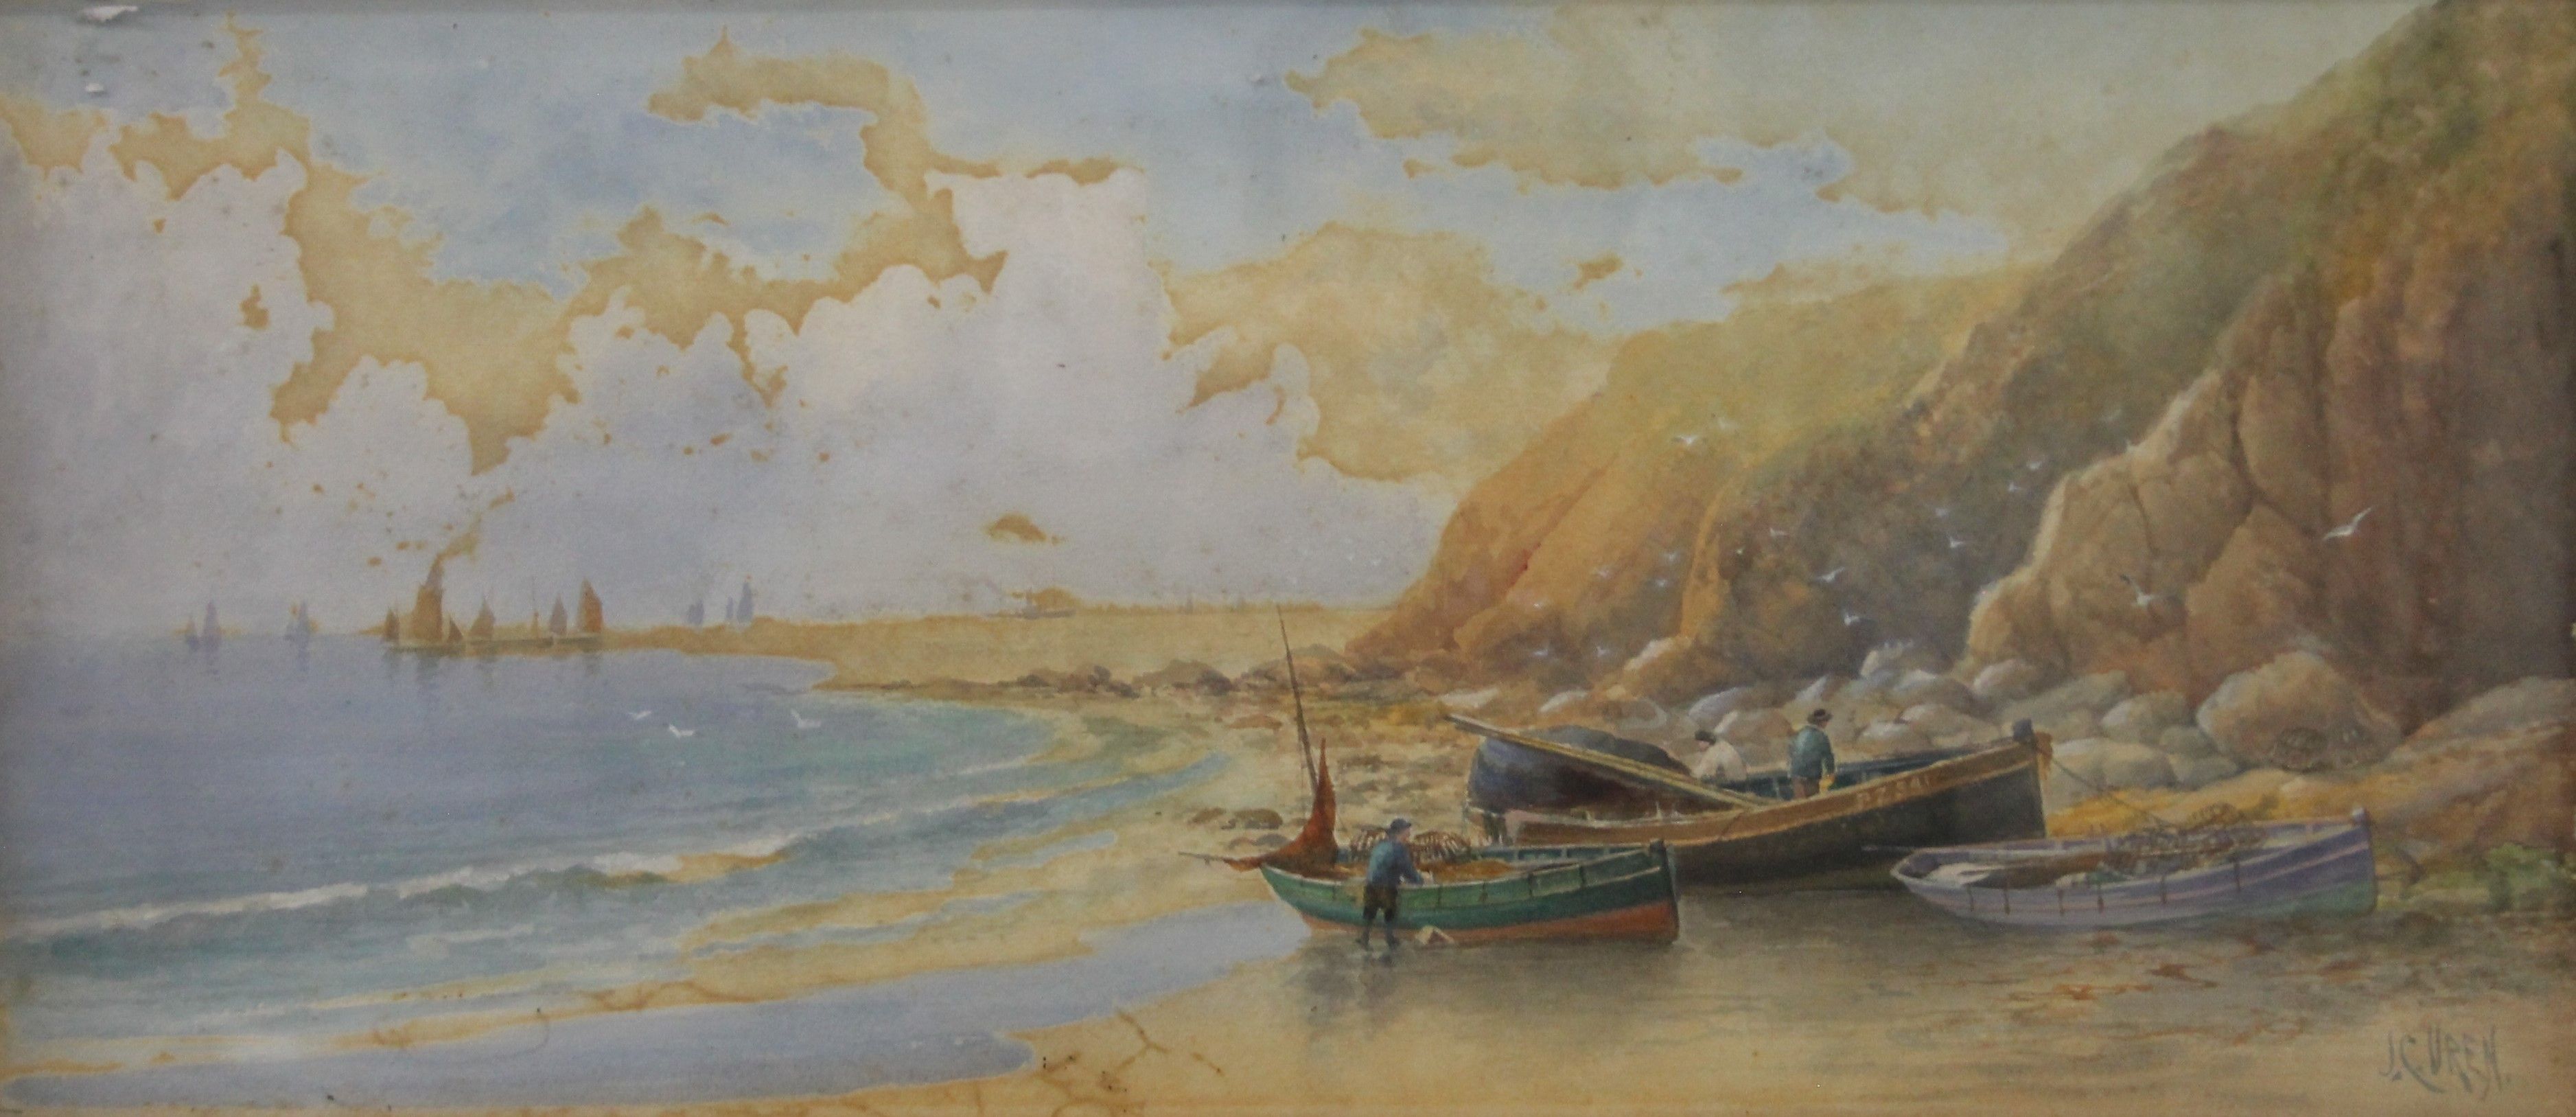 Beach Scene, watercolour, signed J C Uren, framed. 52.5 x 23 cm.